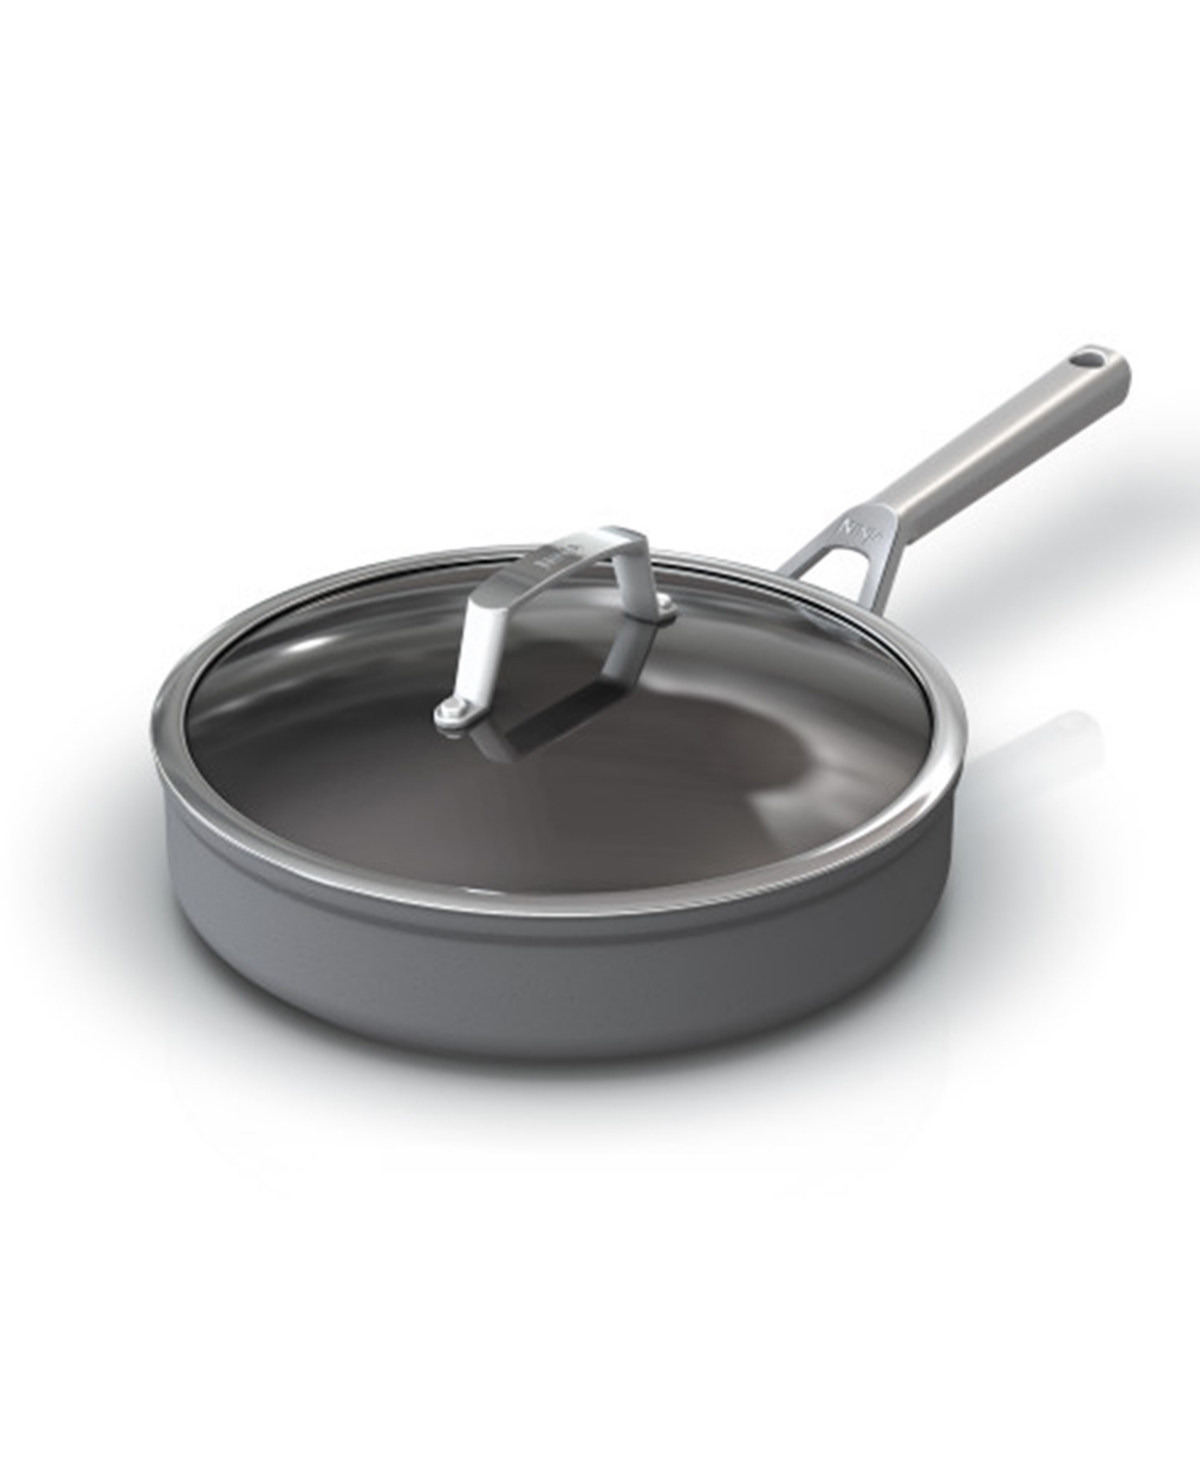 Sharkninja Aluminium 3-quart C30130 Foodi Neverstick Premium Saute Pan In Gray